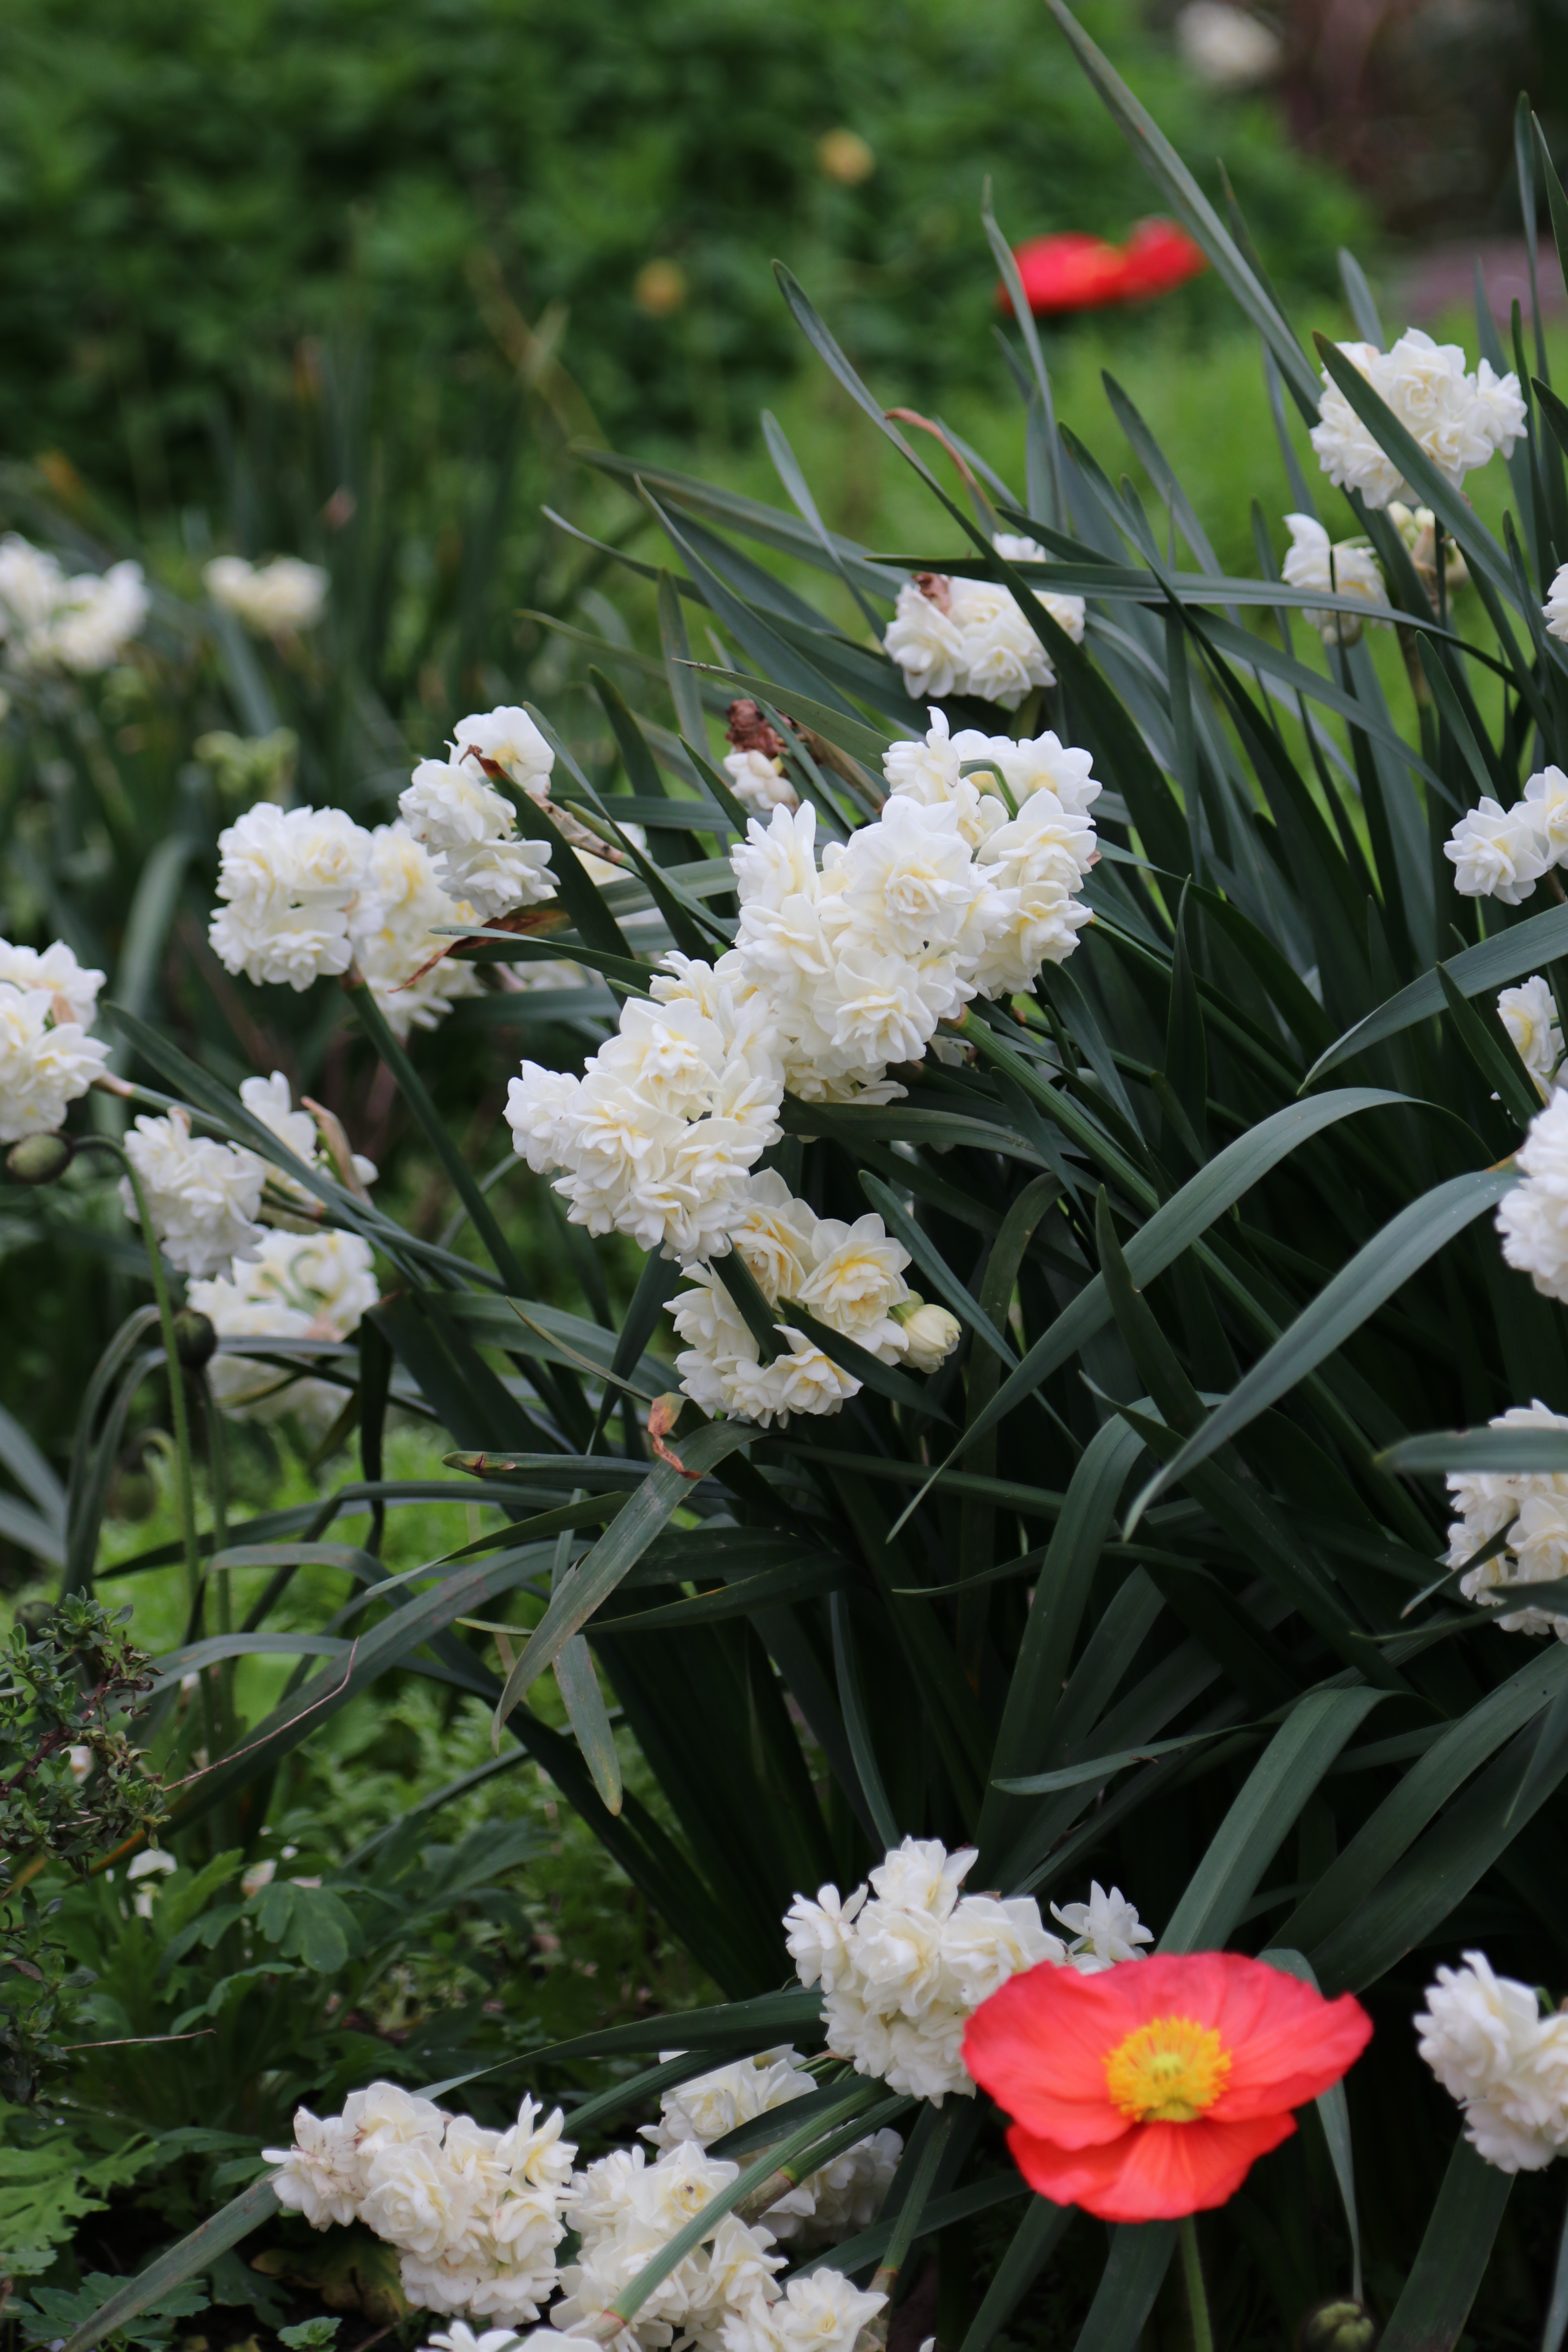 auckland botanic gardens activities Narcissus 'erlicheer'